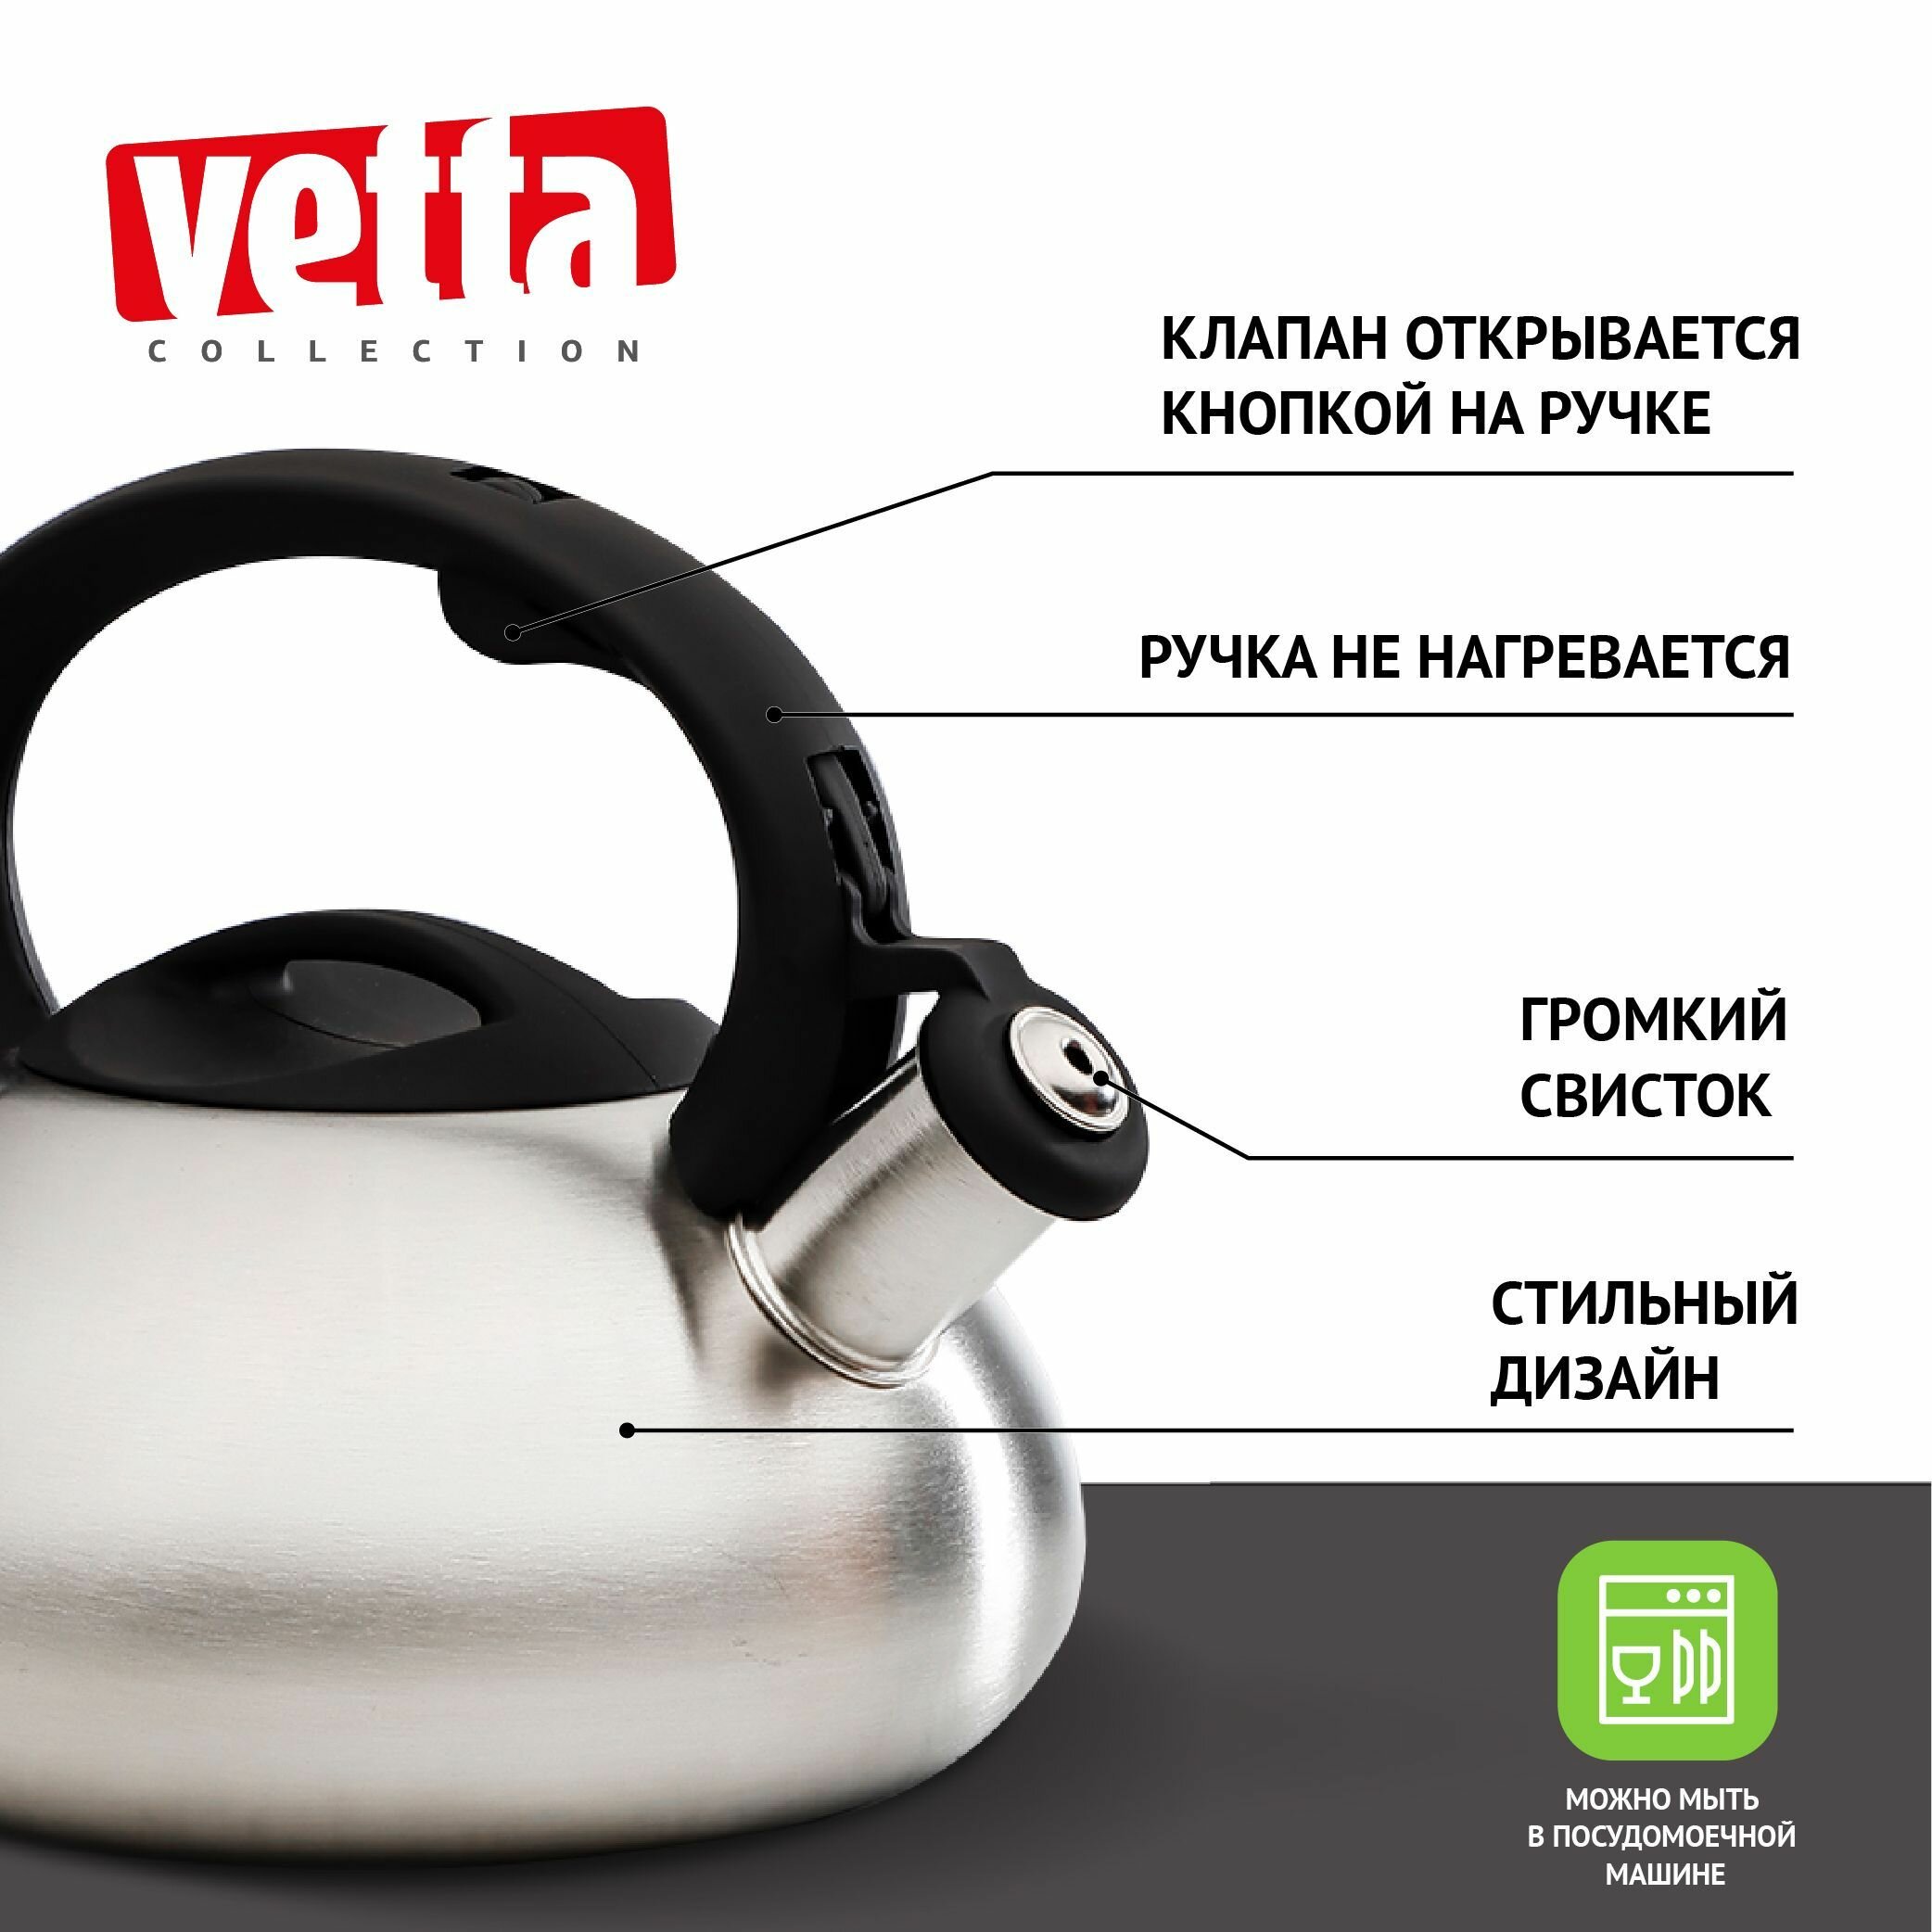 VETTA Чайник стальной 2.5л зеркальный RWK-061-2.5L, индукция